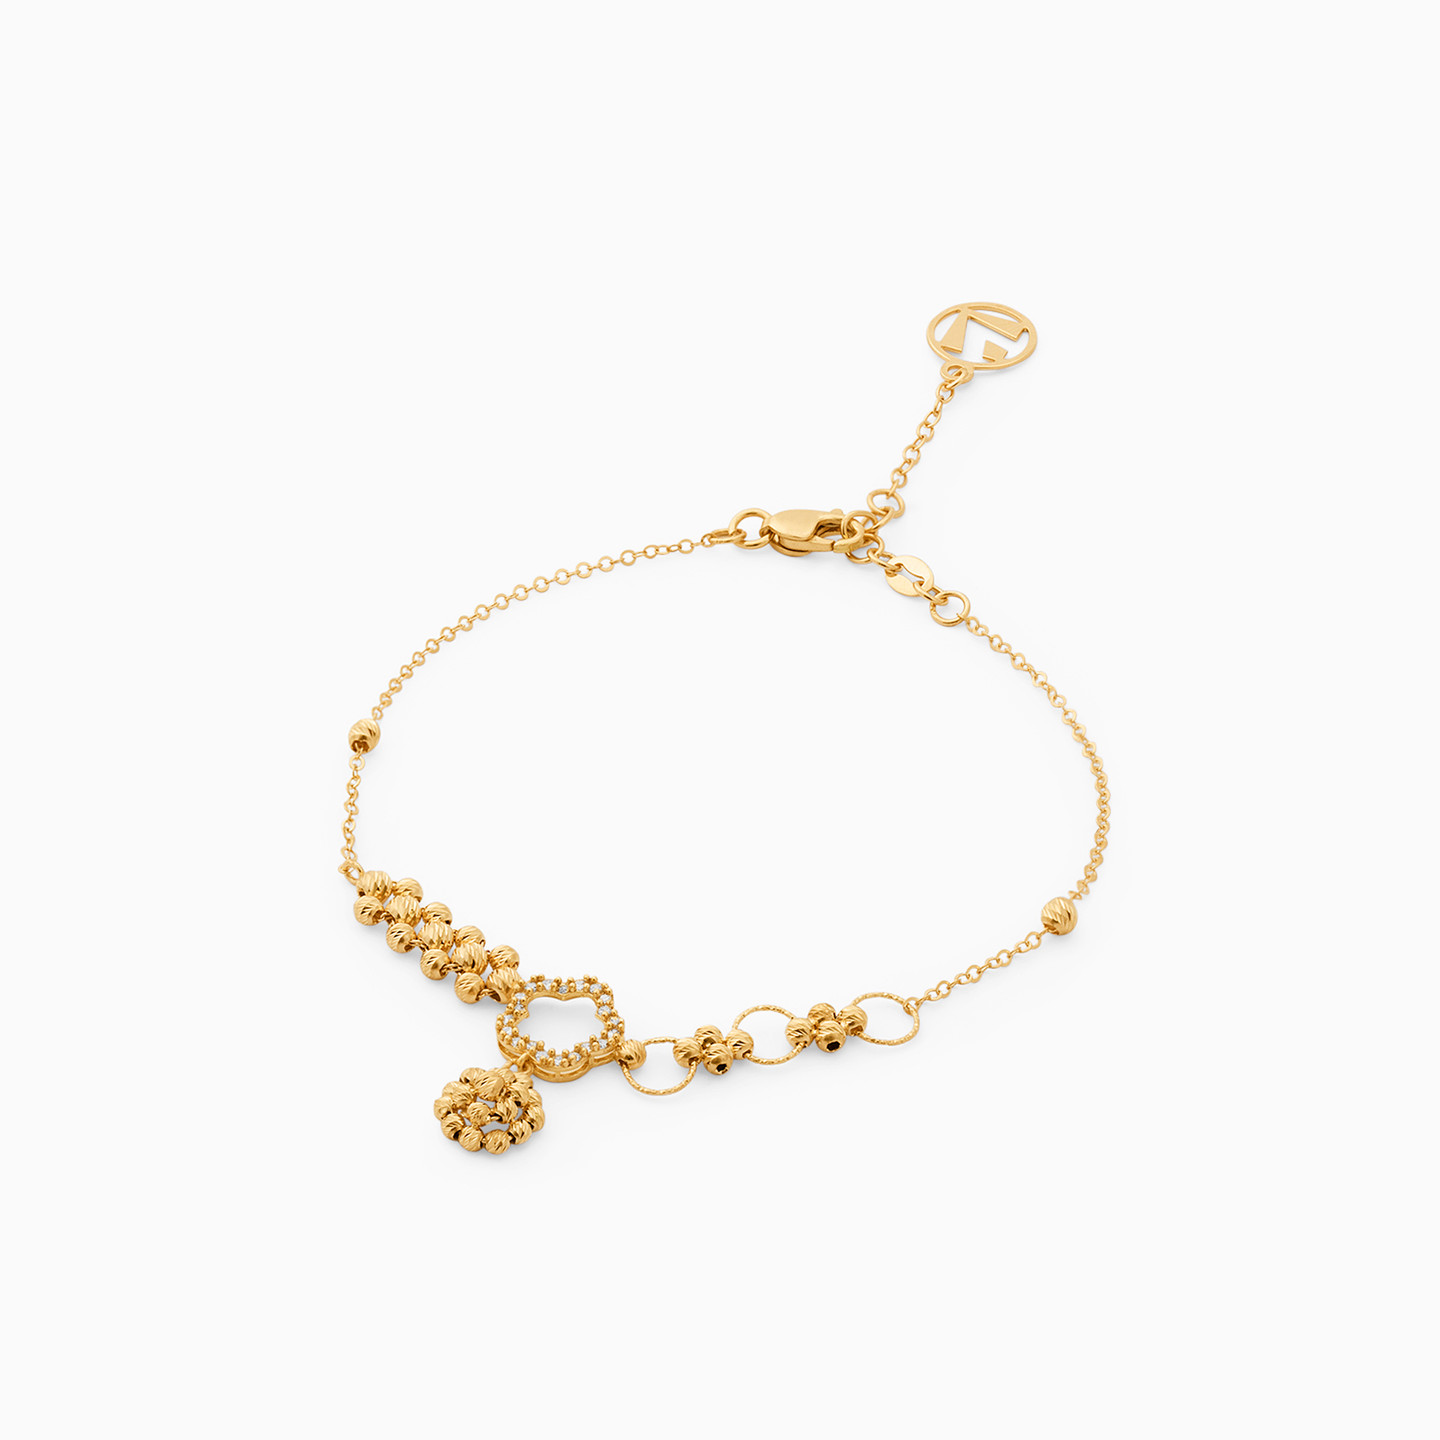 21K Gold Chain Bracelet - 2